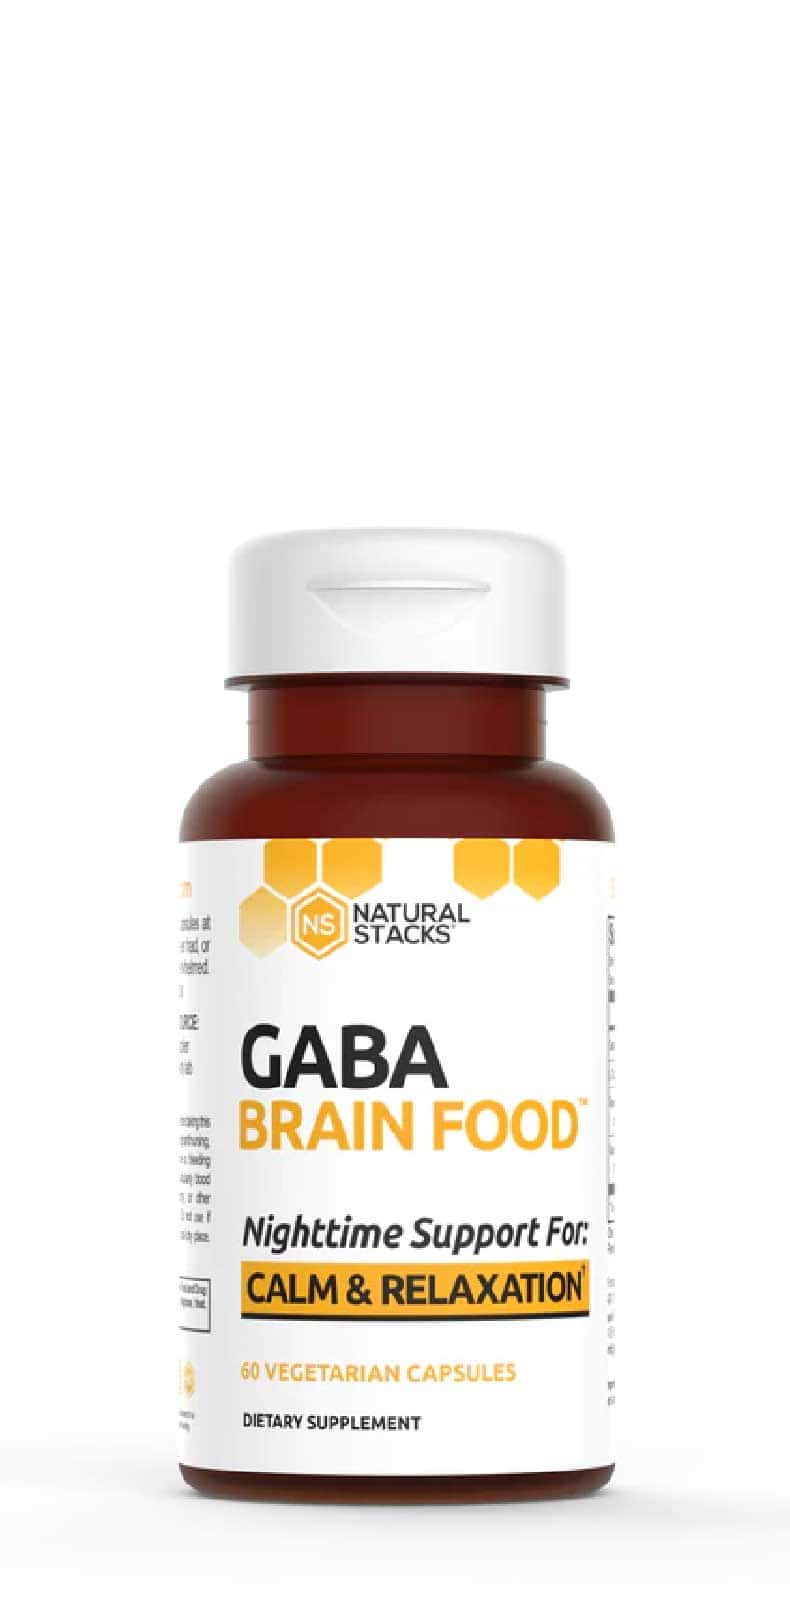 Buy Natural Stacks Gaba Brain Food at LiveHelfi